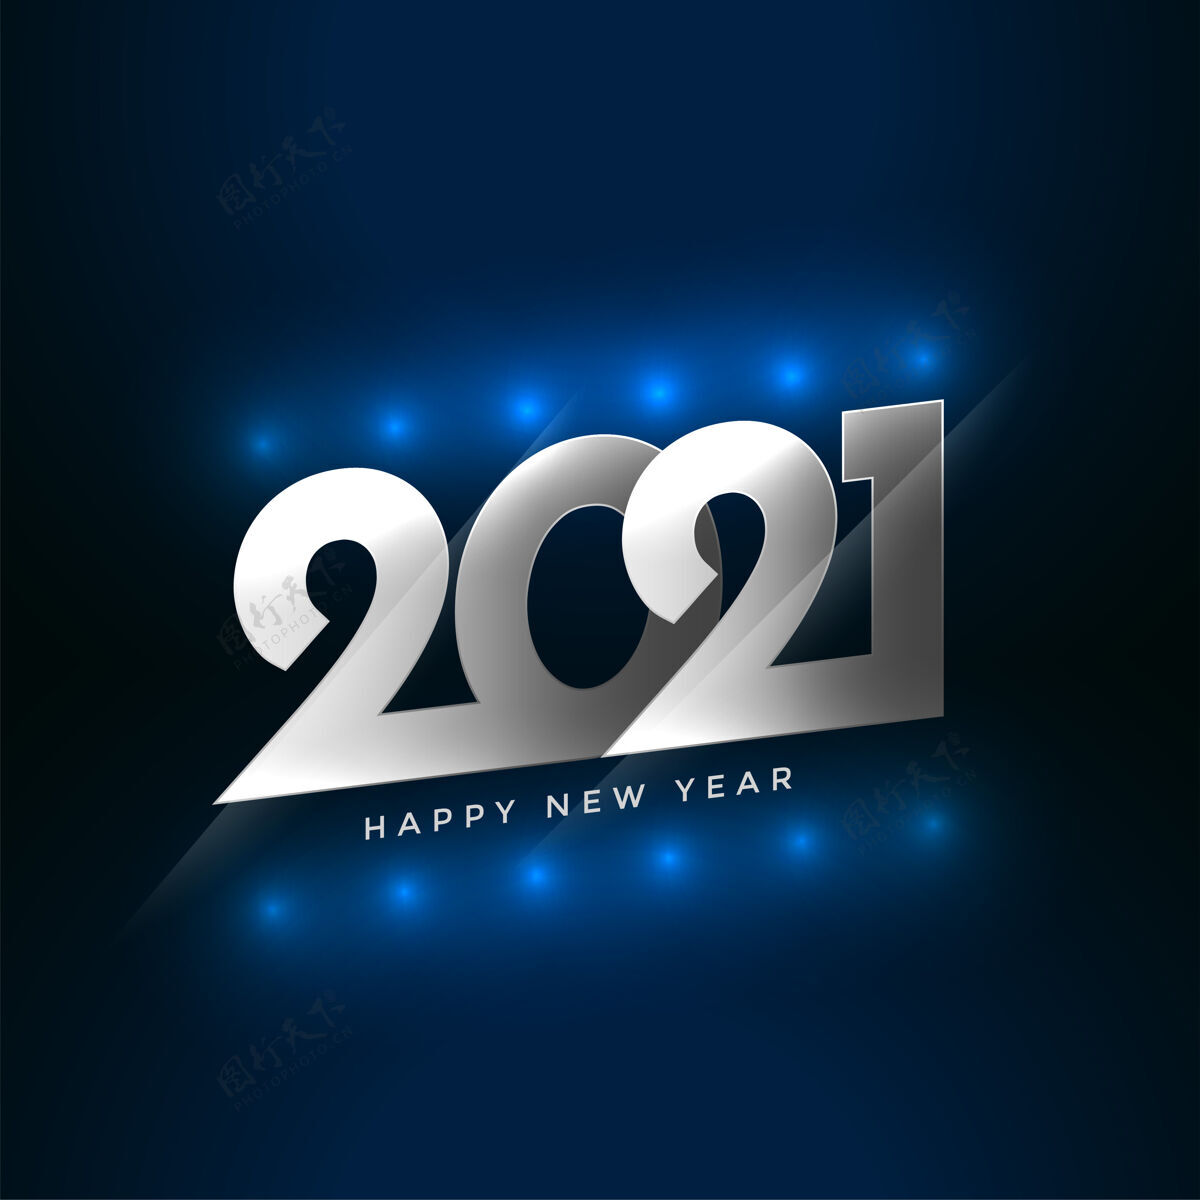 节日2021年新年快乐祝福卡 带灯光效果摘要事件冬季